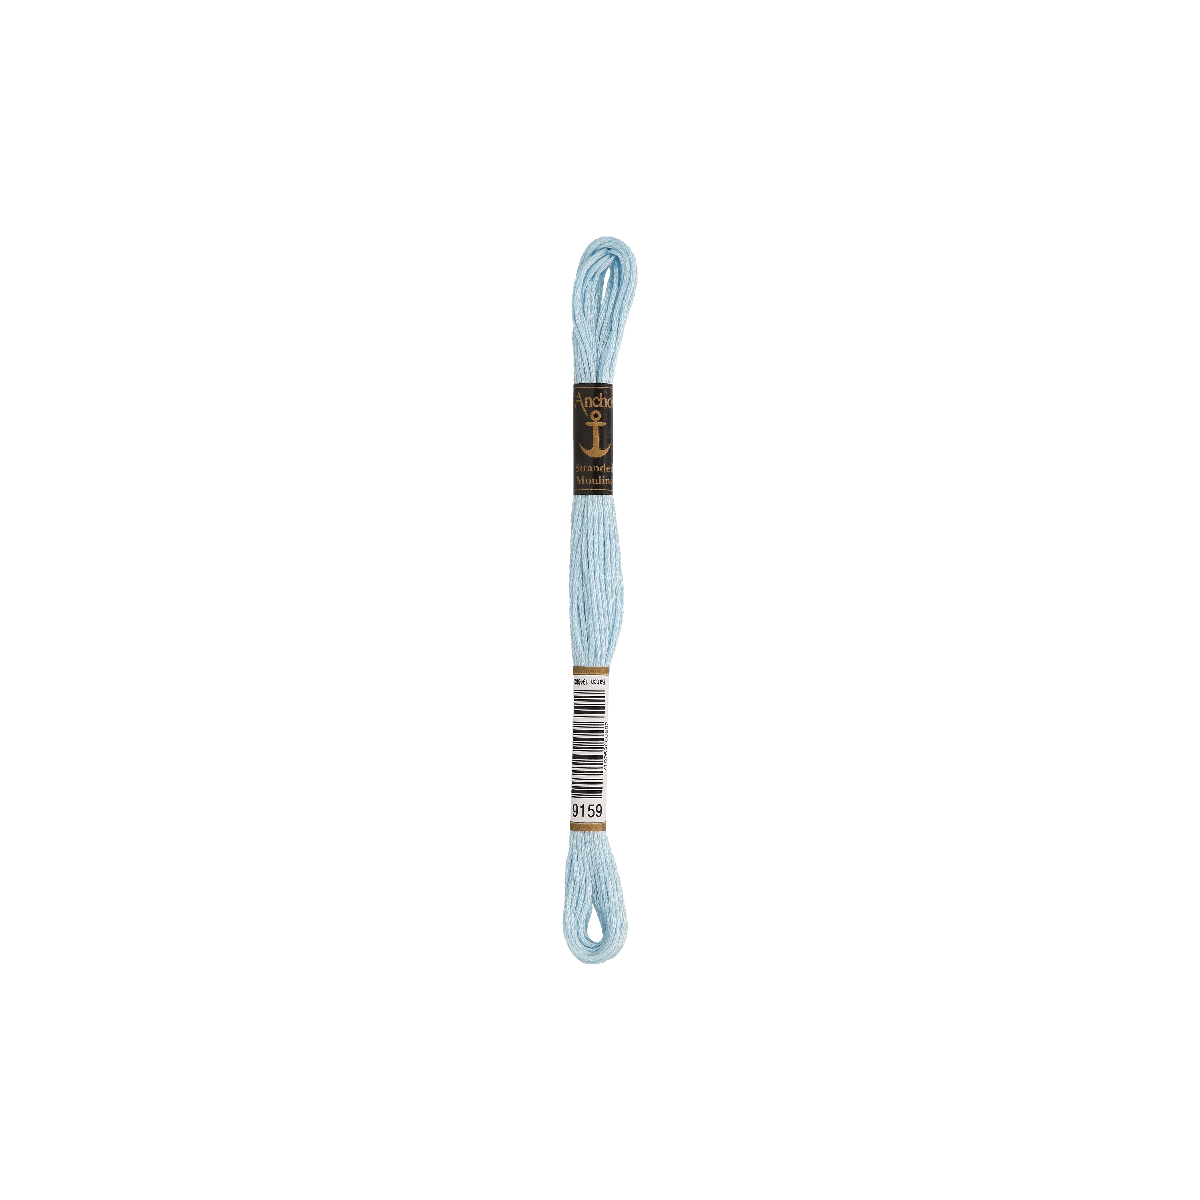 Anchor Sticktwist 8m, blu morbido, cotone, colore 9159, 6...